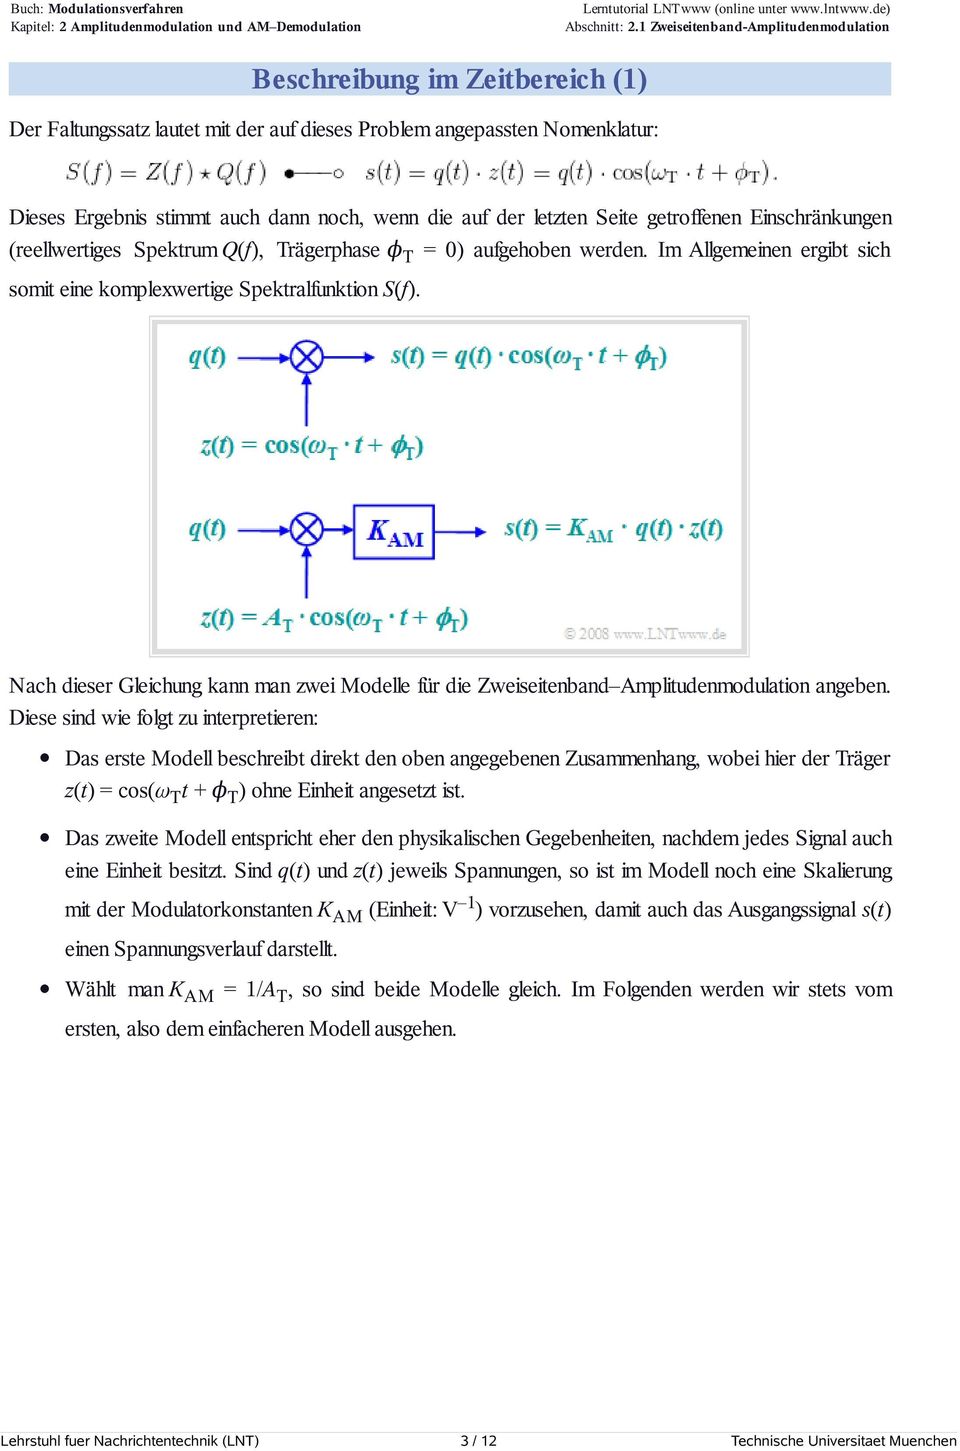 Nach dieser Gleichung kann man zwei Modelle für die Zweiseitenband Amplitudenmodulation angeben.